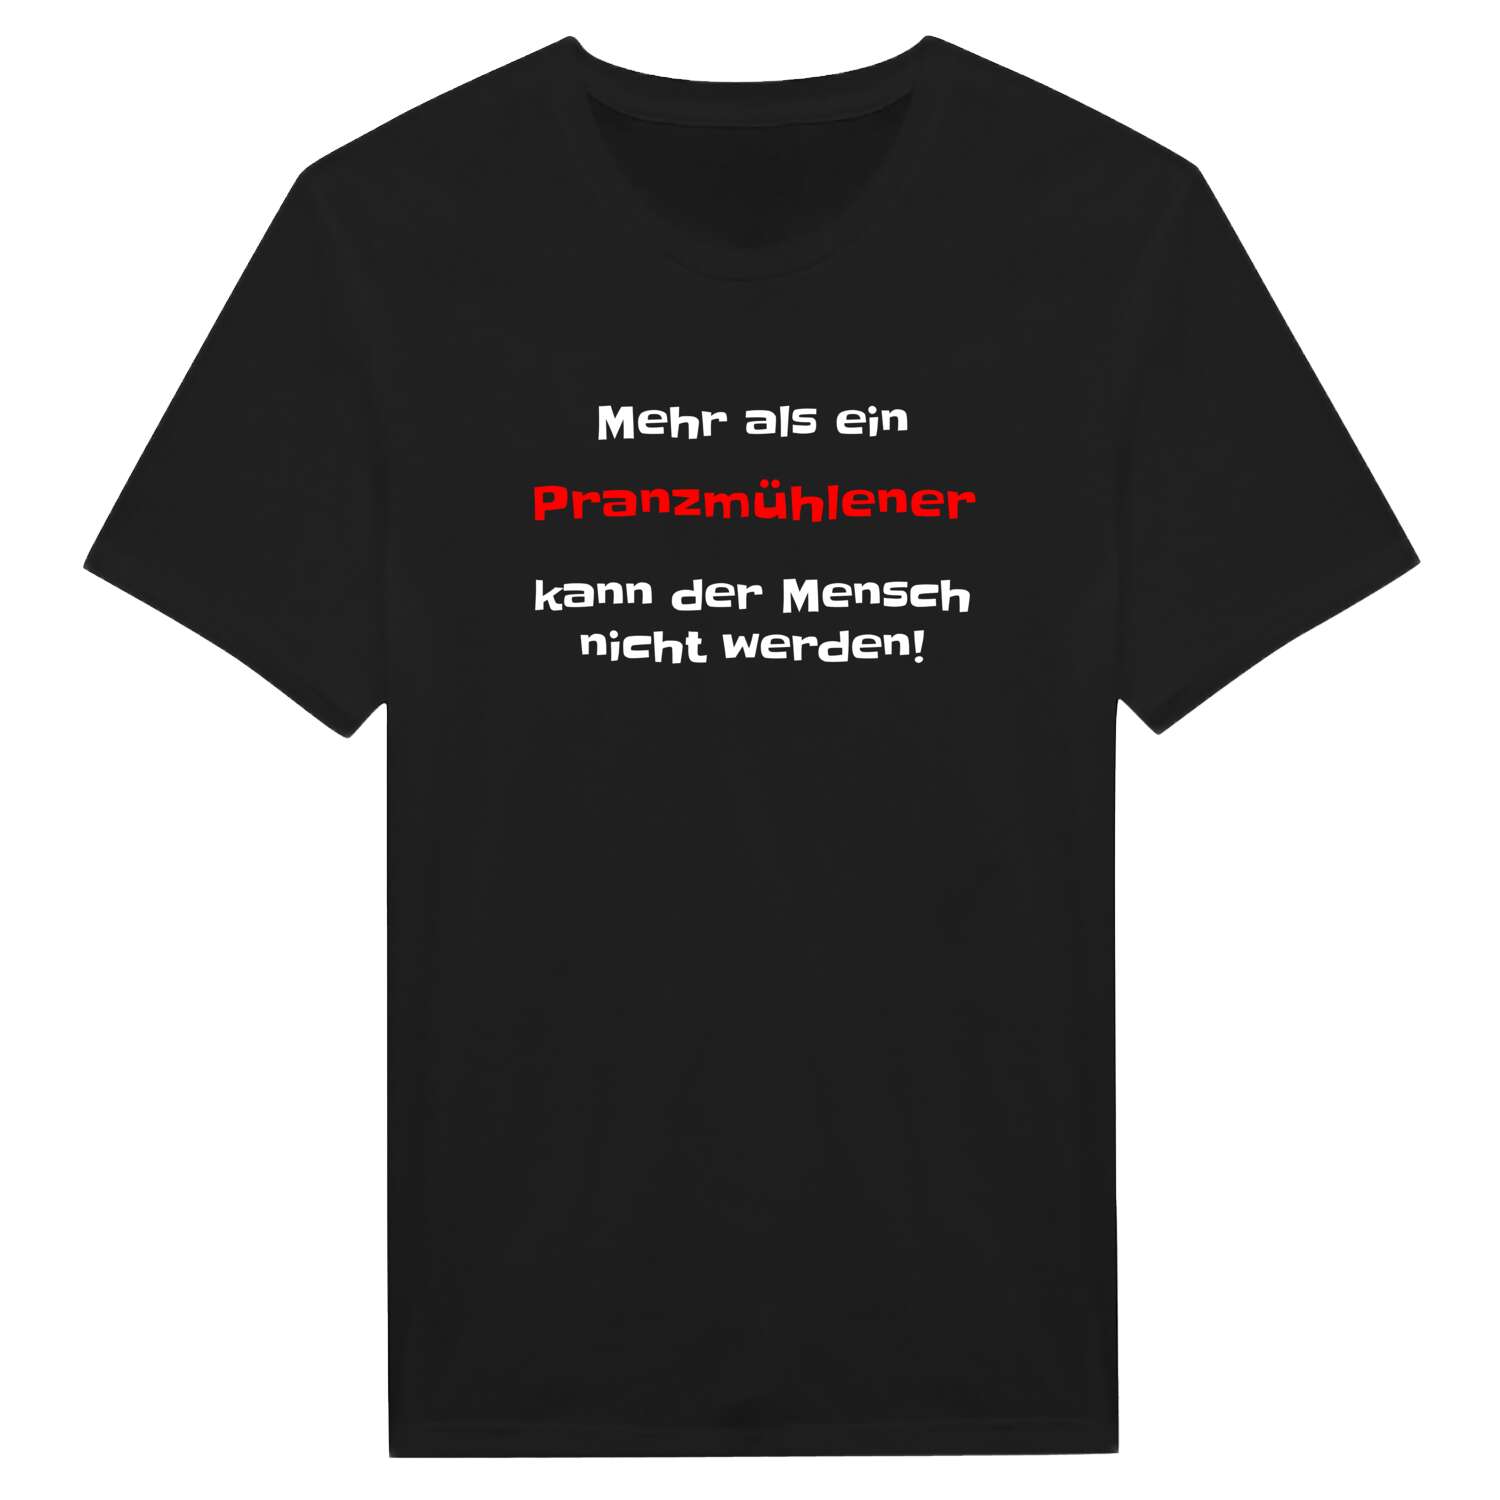 Pranzmühle T-Shirt »Mehr als ein«